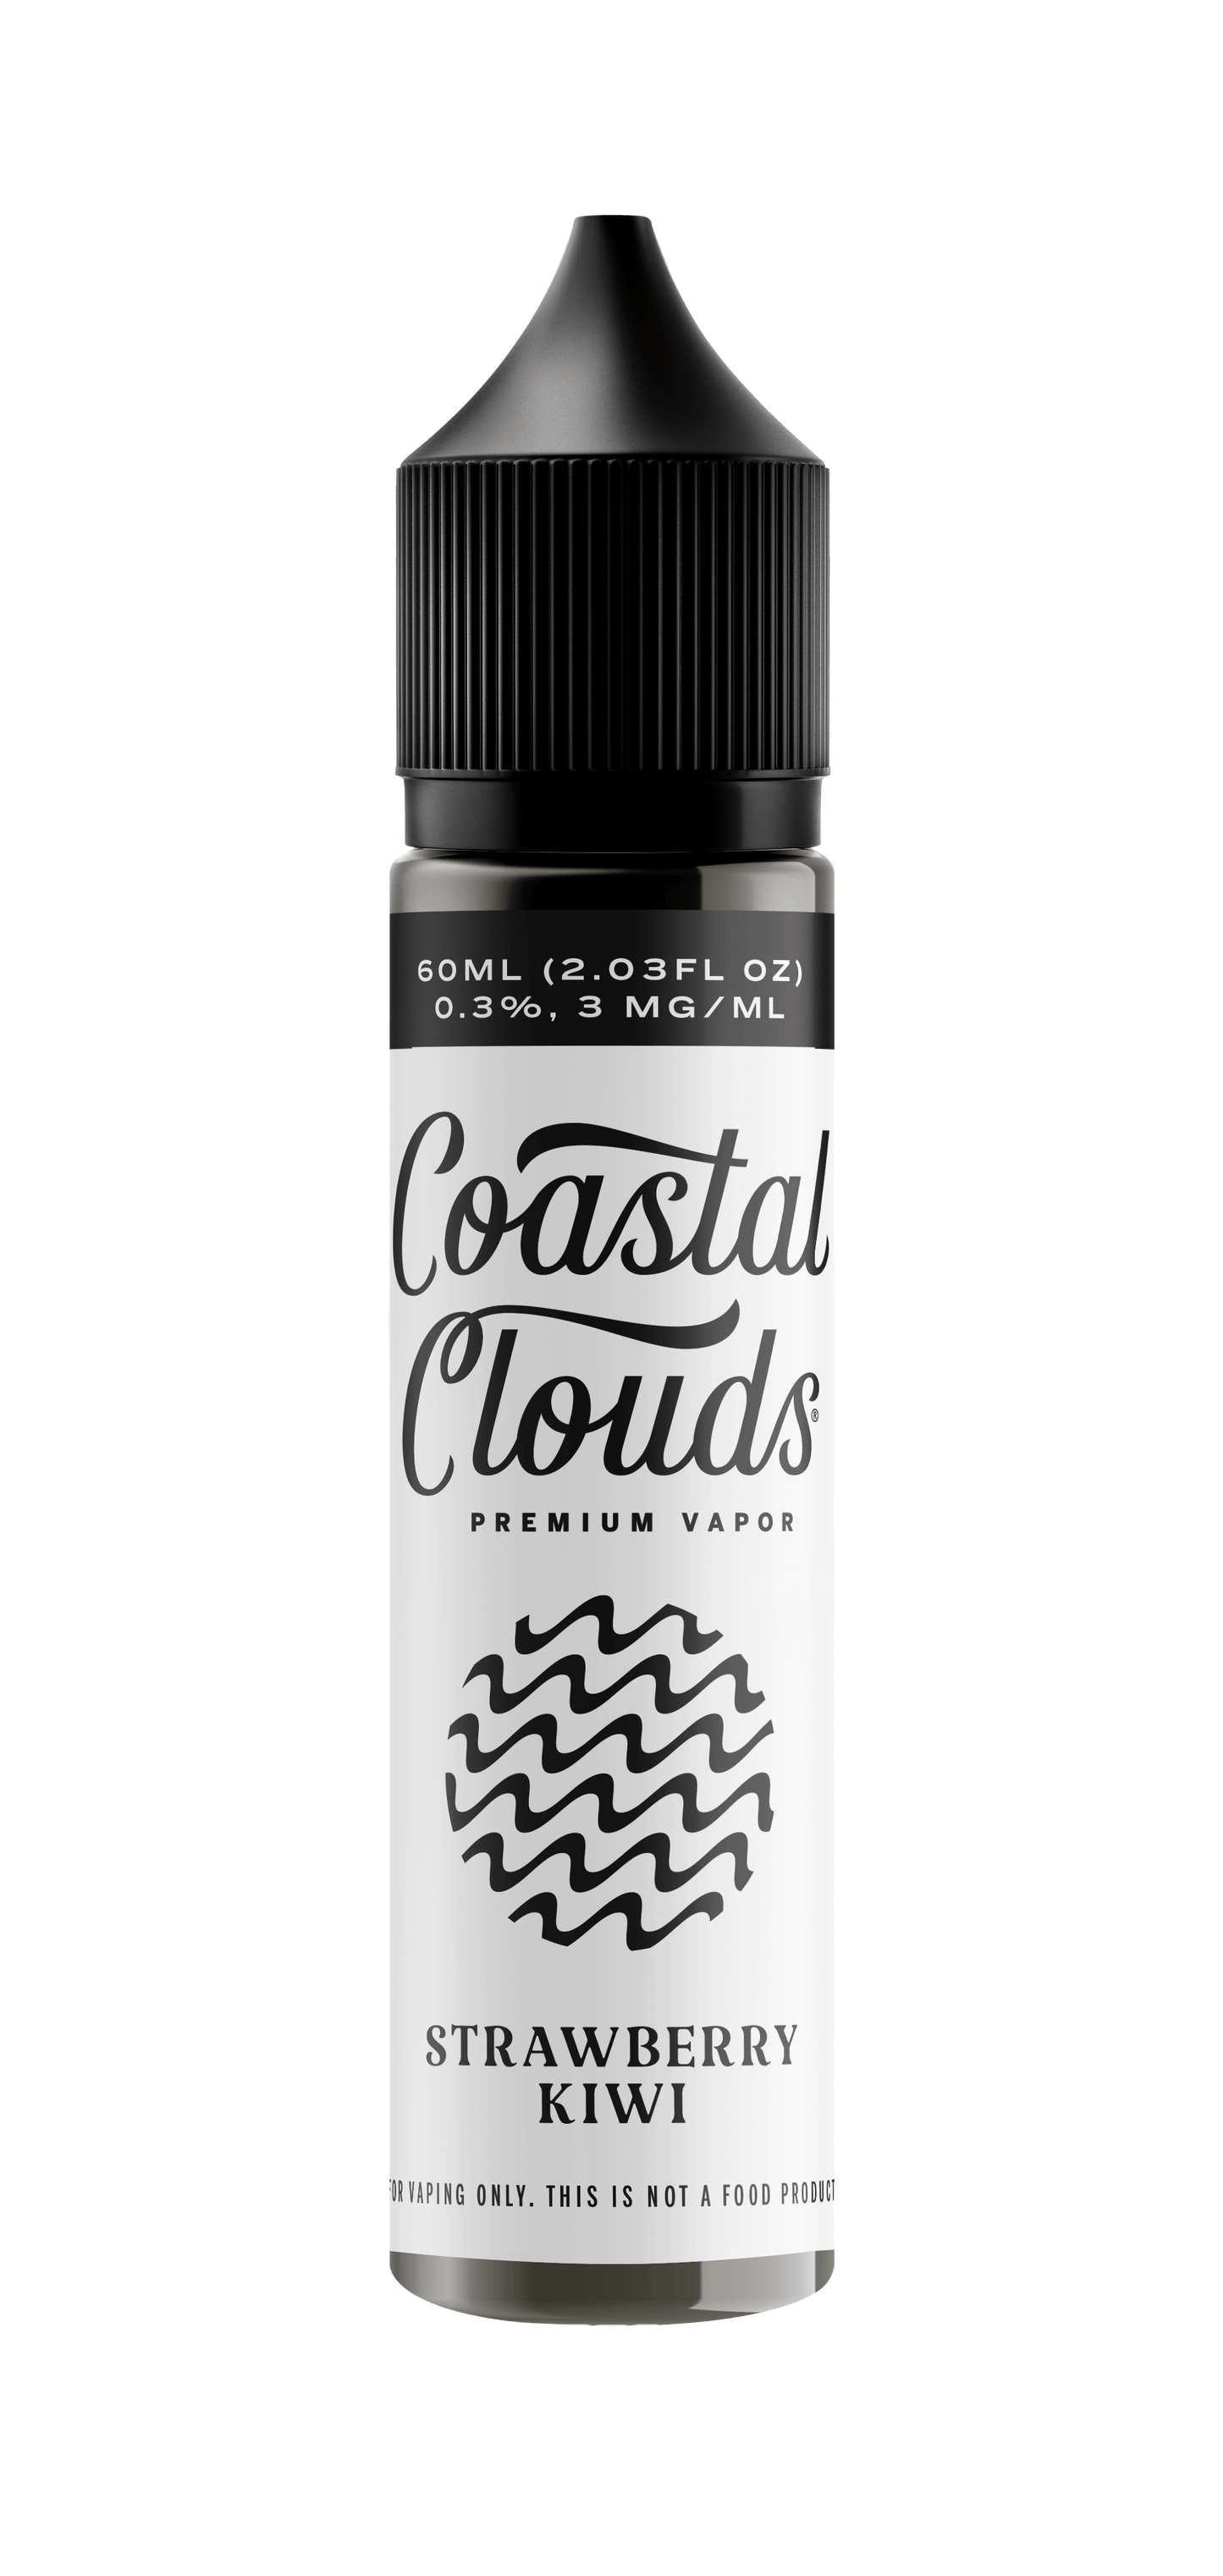 Strawberry Kiwi TF-Nic by Coastal Clouds Series 60mL